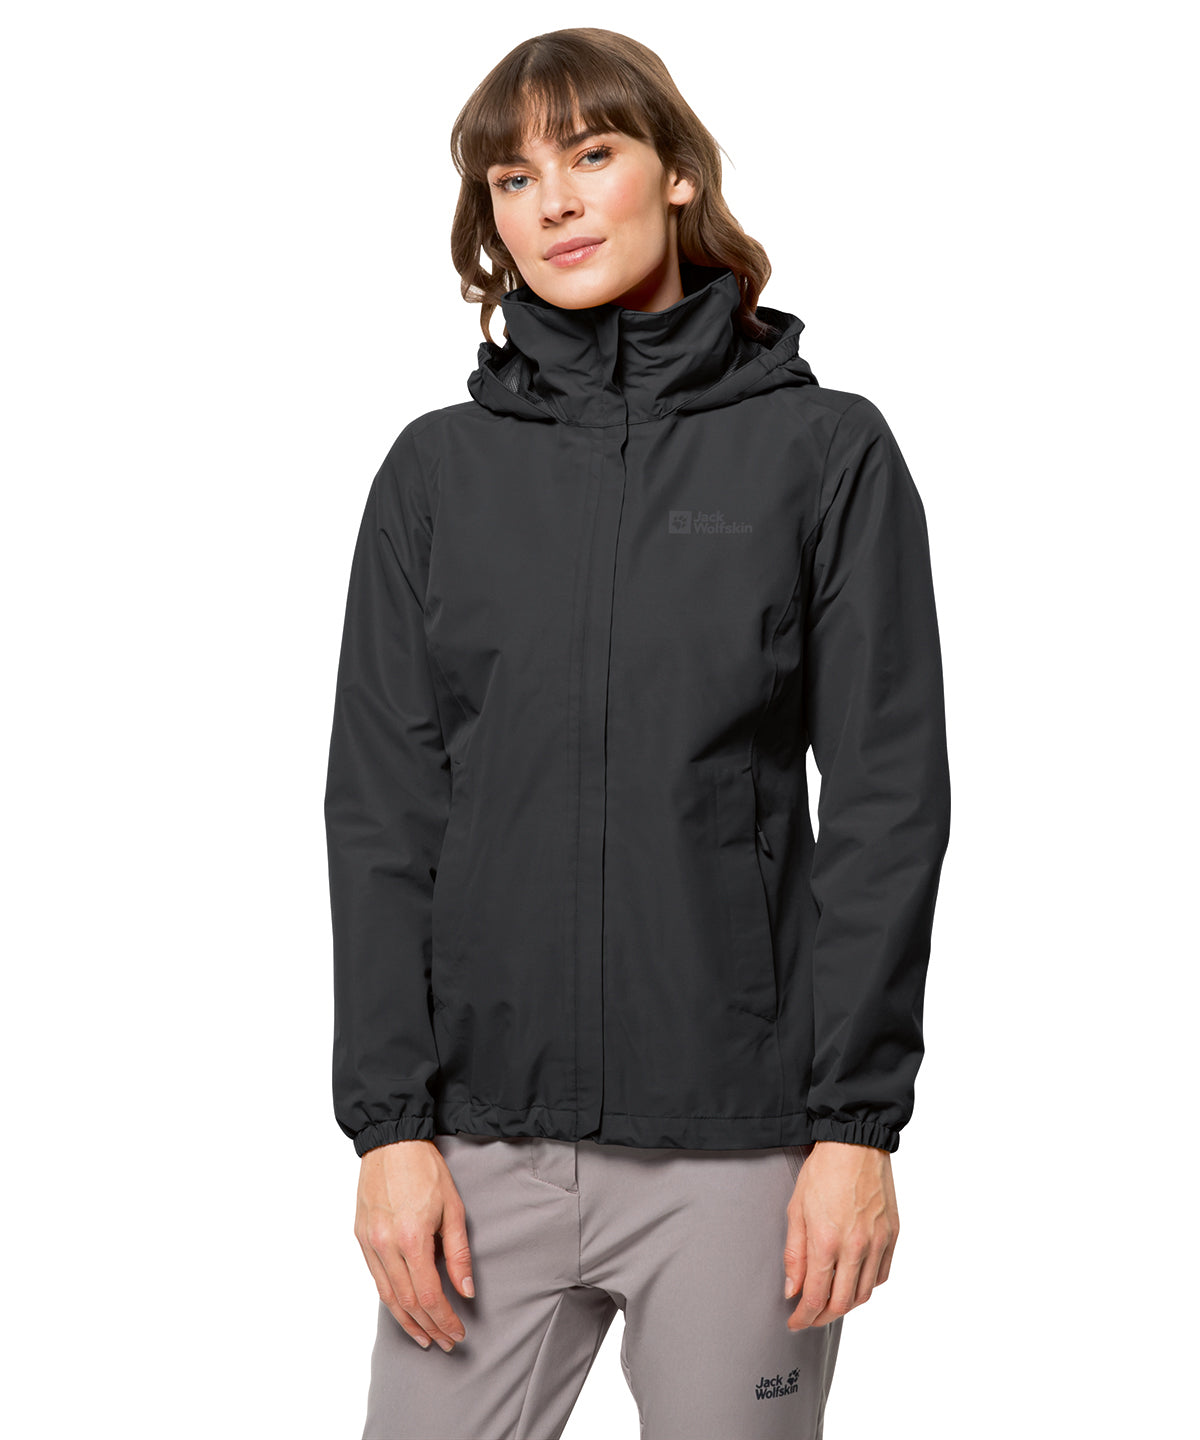 Jakkar - Women's Waterproof Jacket  (NL)